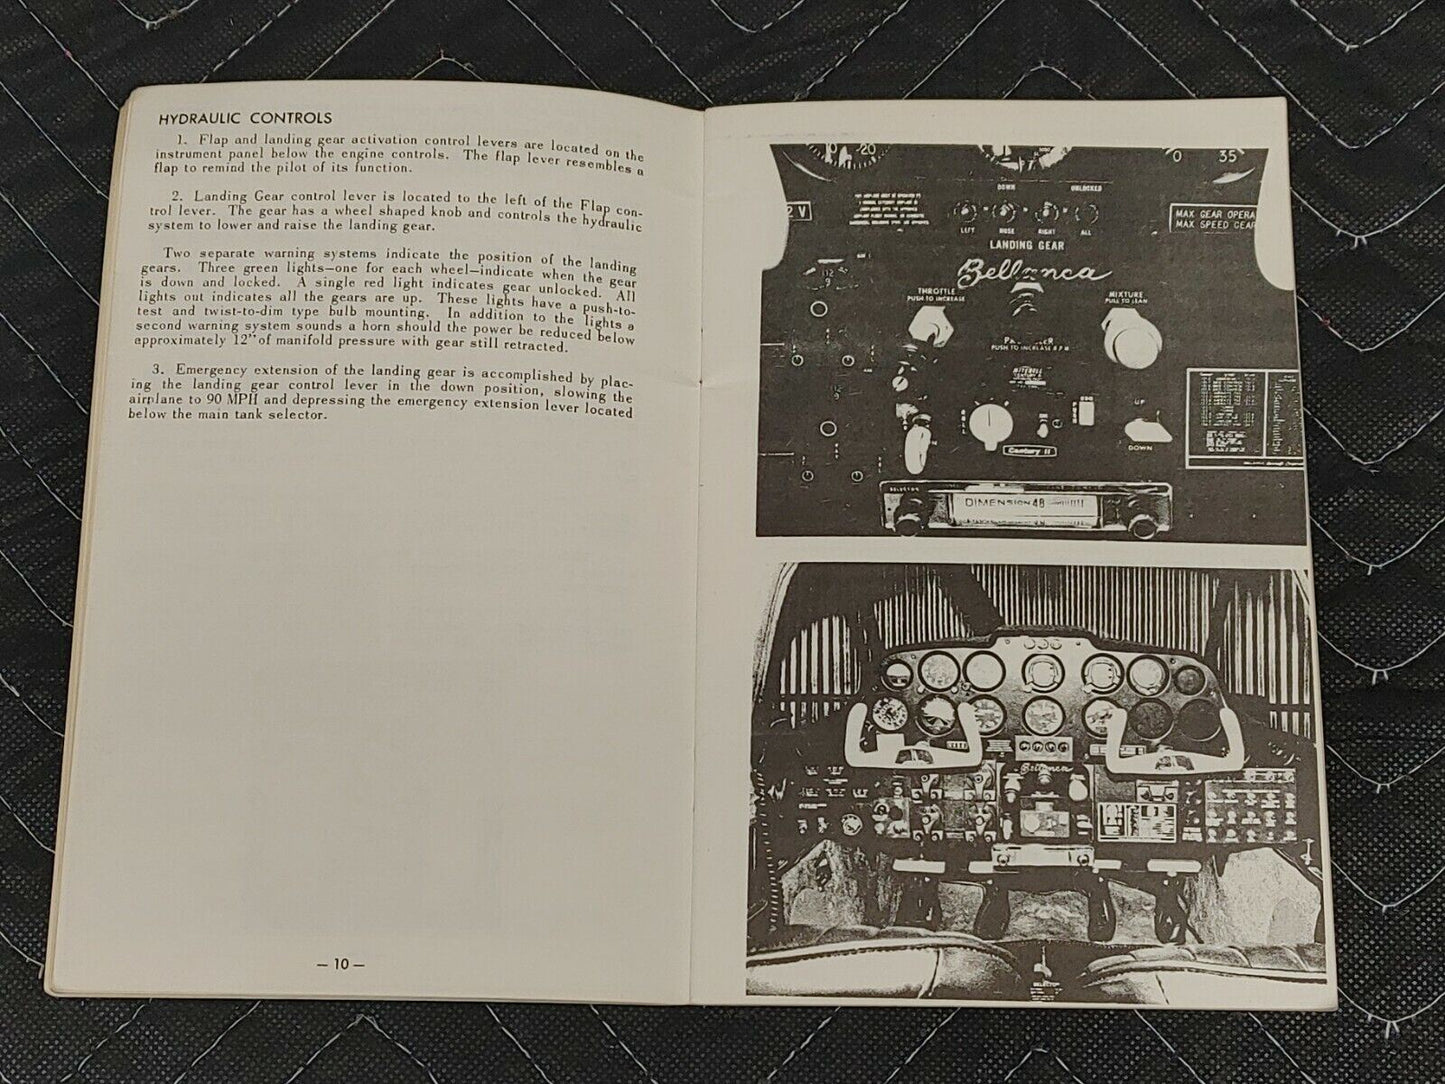 1968-75 BELLANCA VIKING 300 Original Owner's Manual